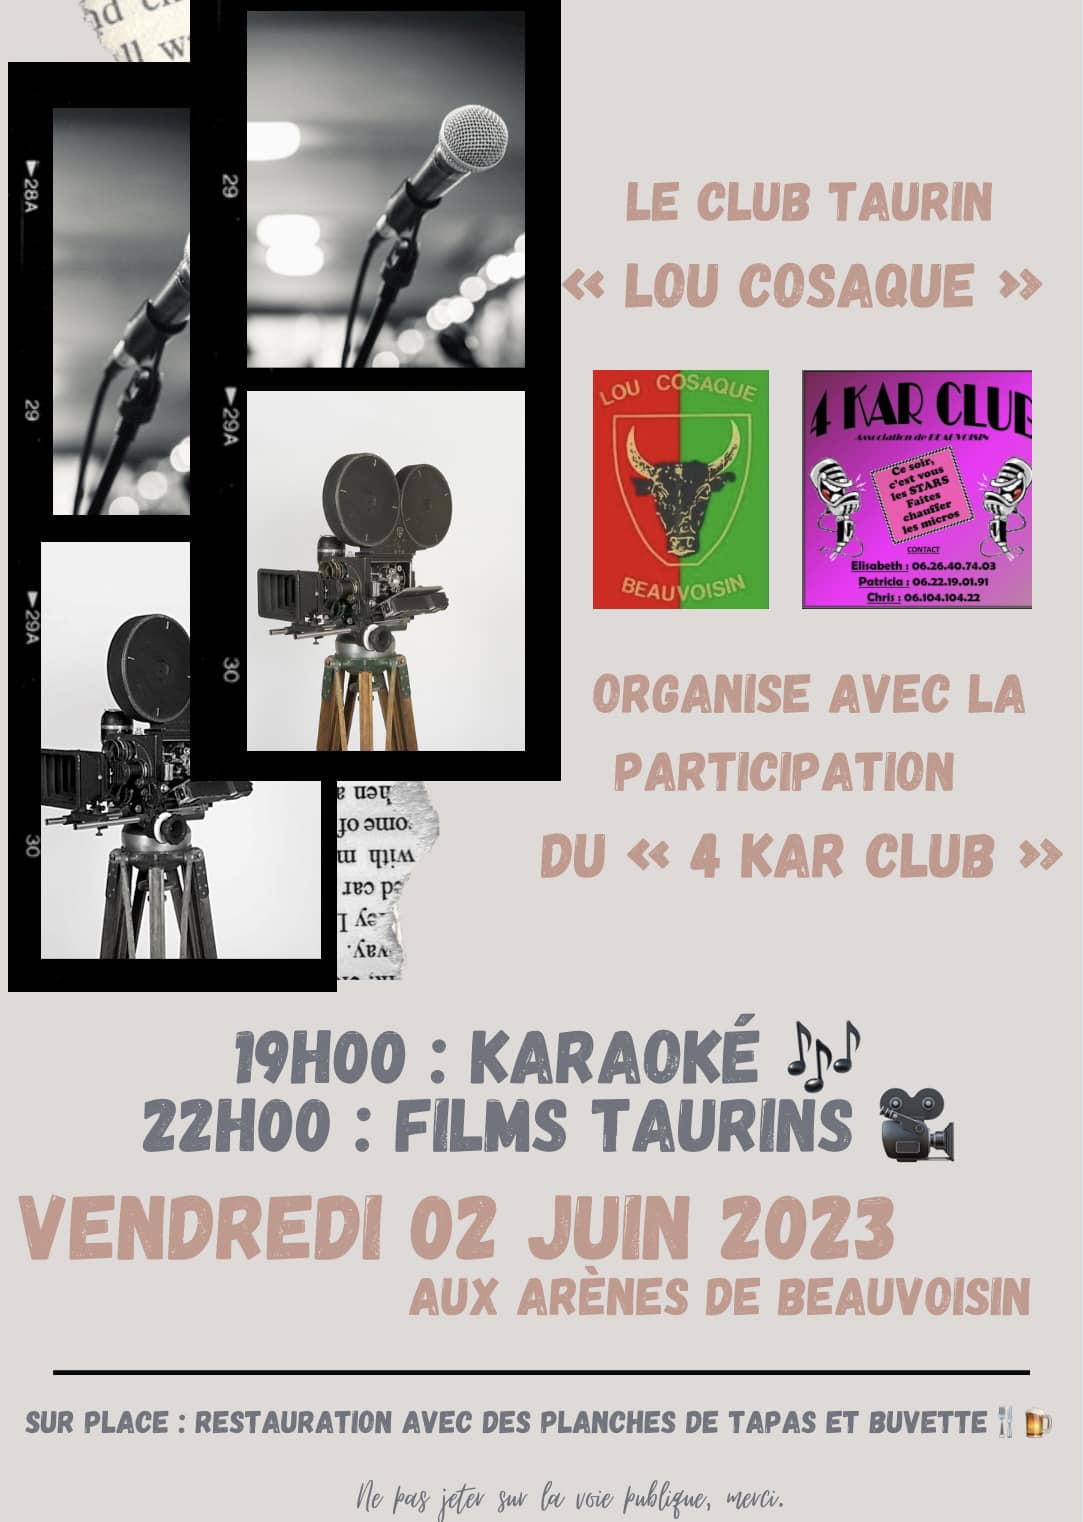 Fete du club taurin Lou Cosaque Beauvoisin - Les 03 et 04 juin 2023